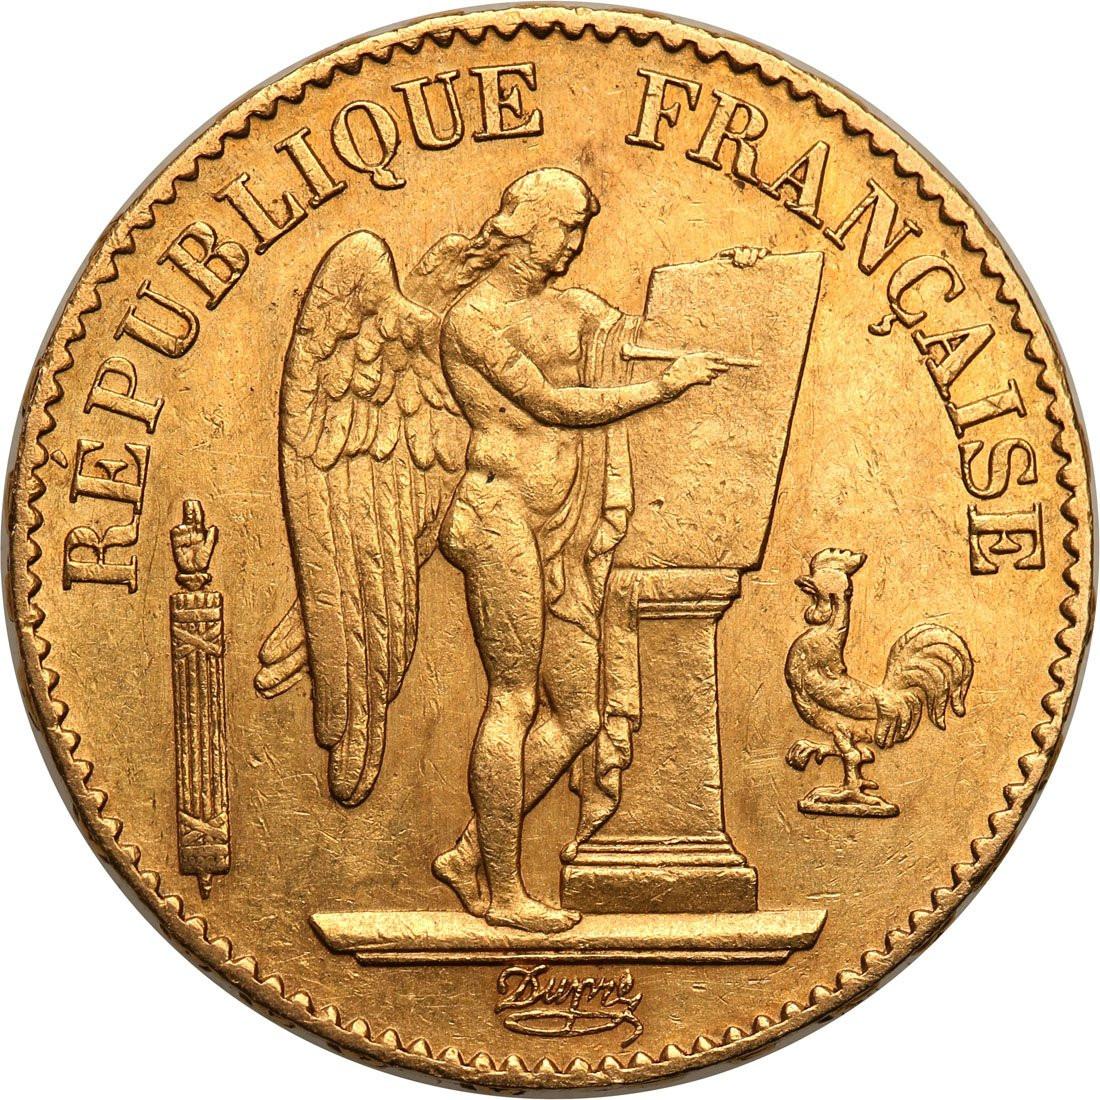 Francja III Republika. 20 franków 1877 A-Paryż - ANIOŁ